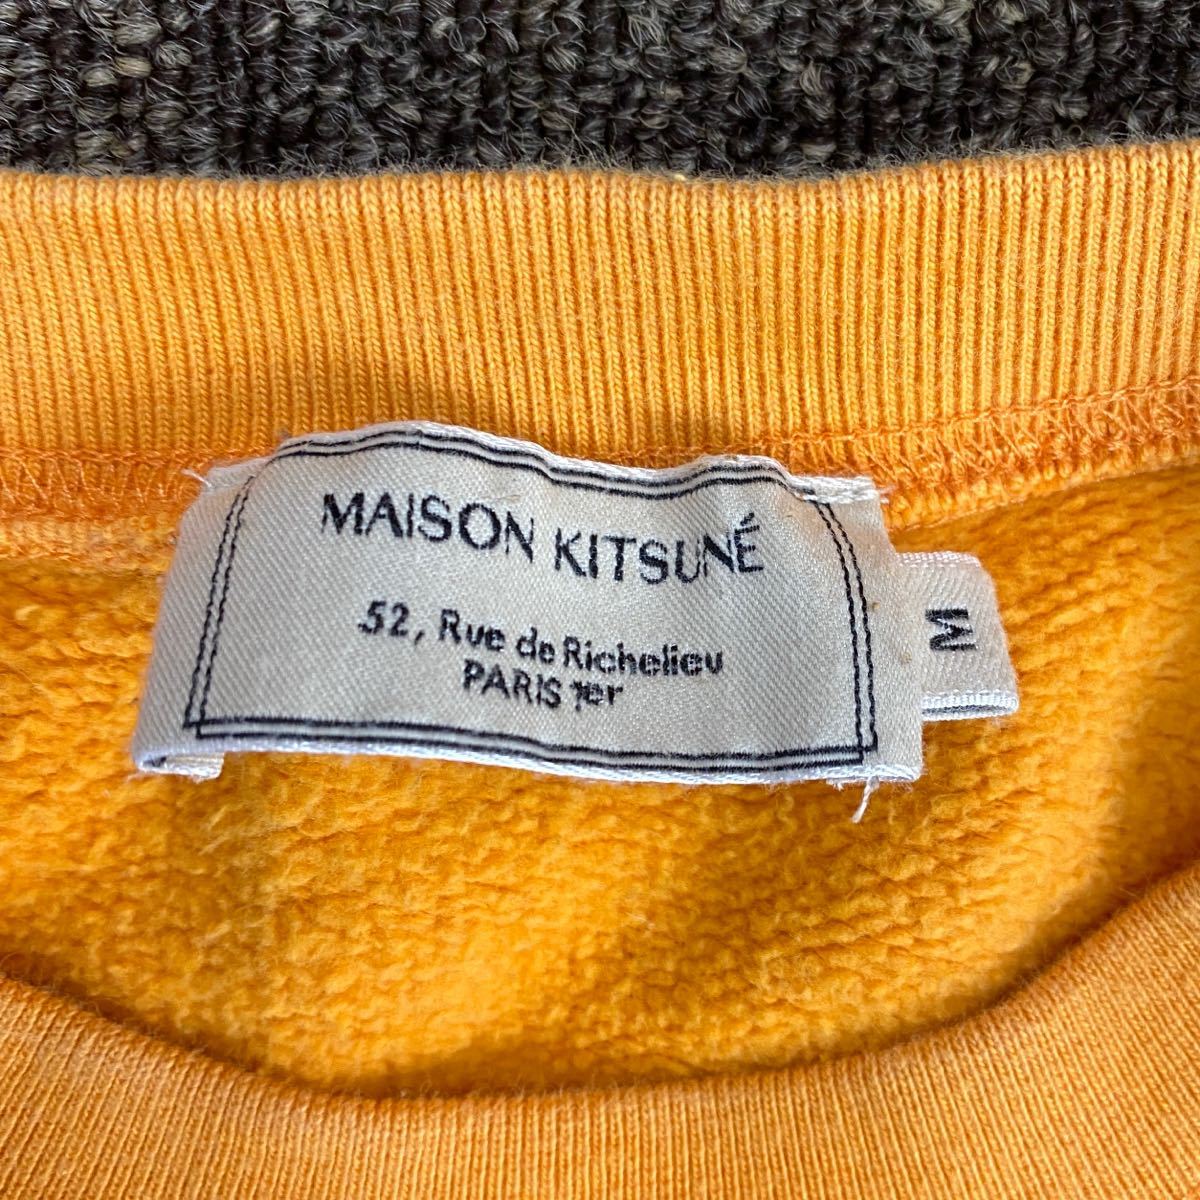  mezzo n лисица обратная сторона ворсистый тренировочный футболка M размер orange MAISON KITSUNE FOX PATCH one отметка Logo вышивка 